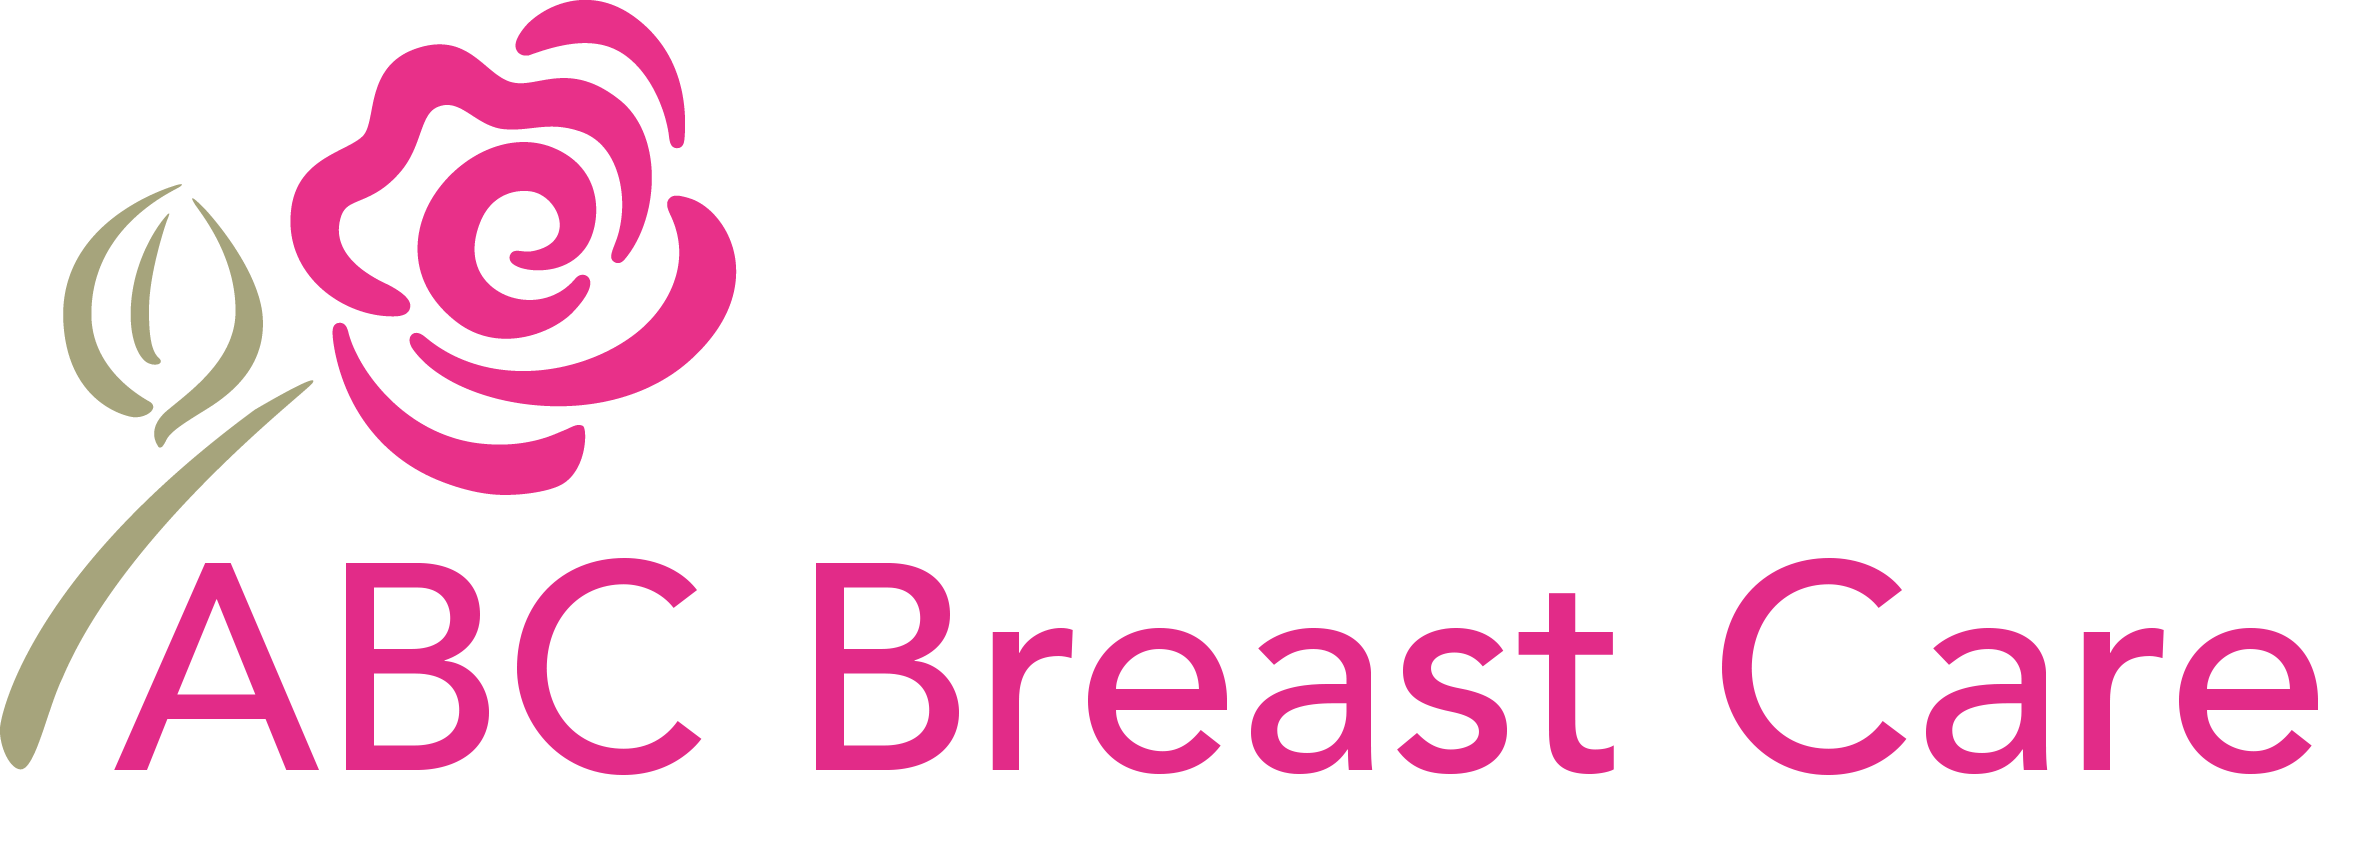 ABC Breast Care logo